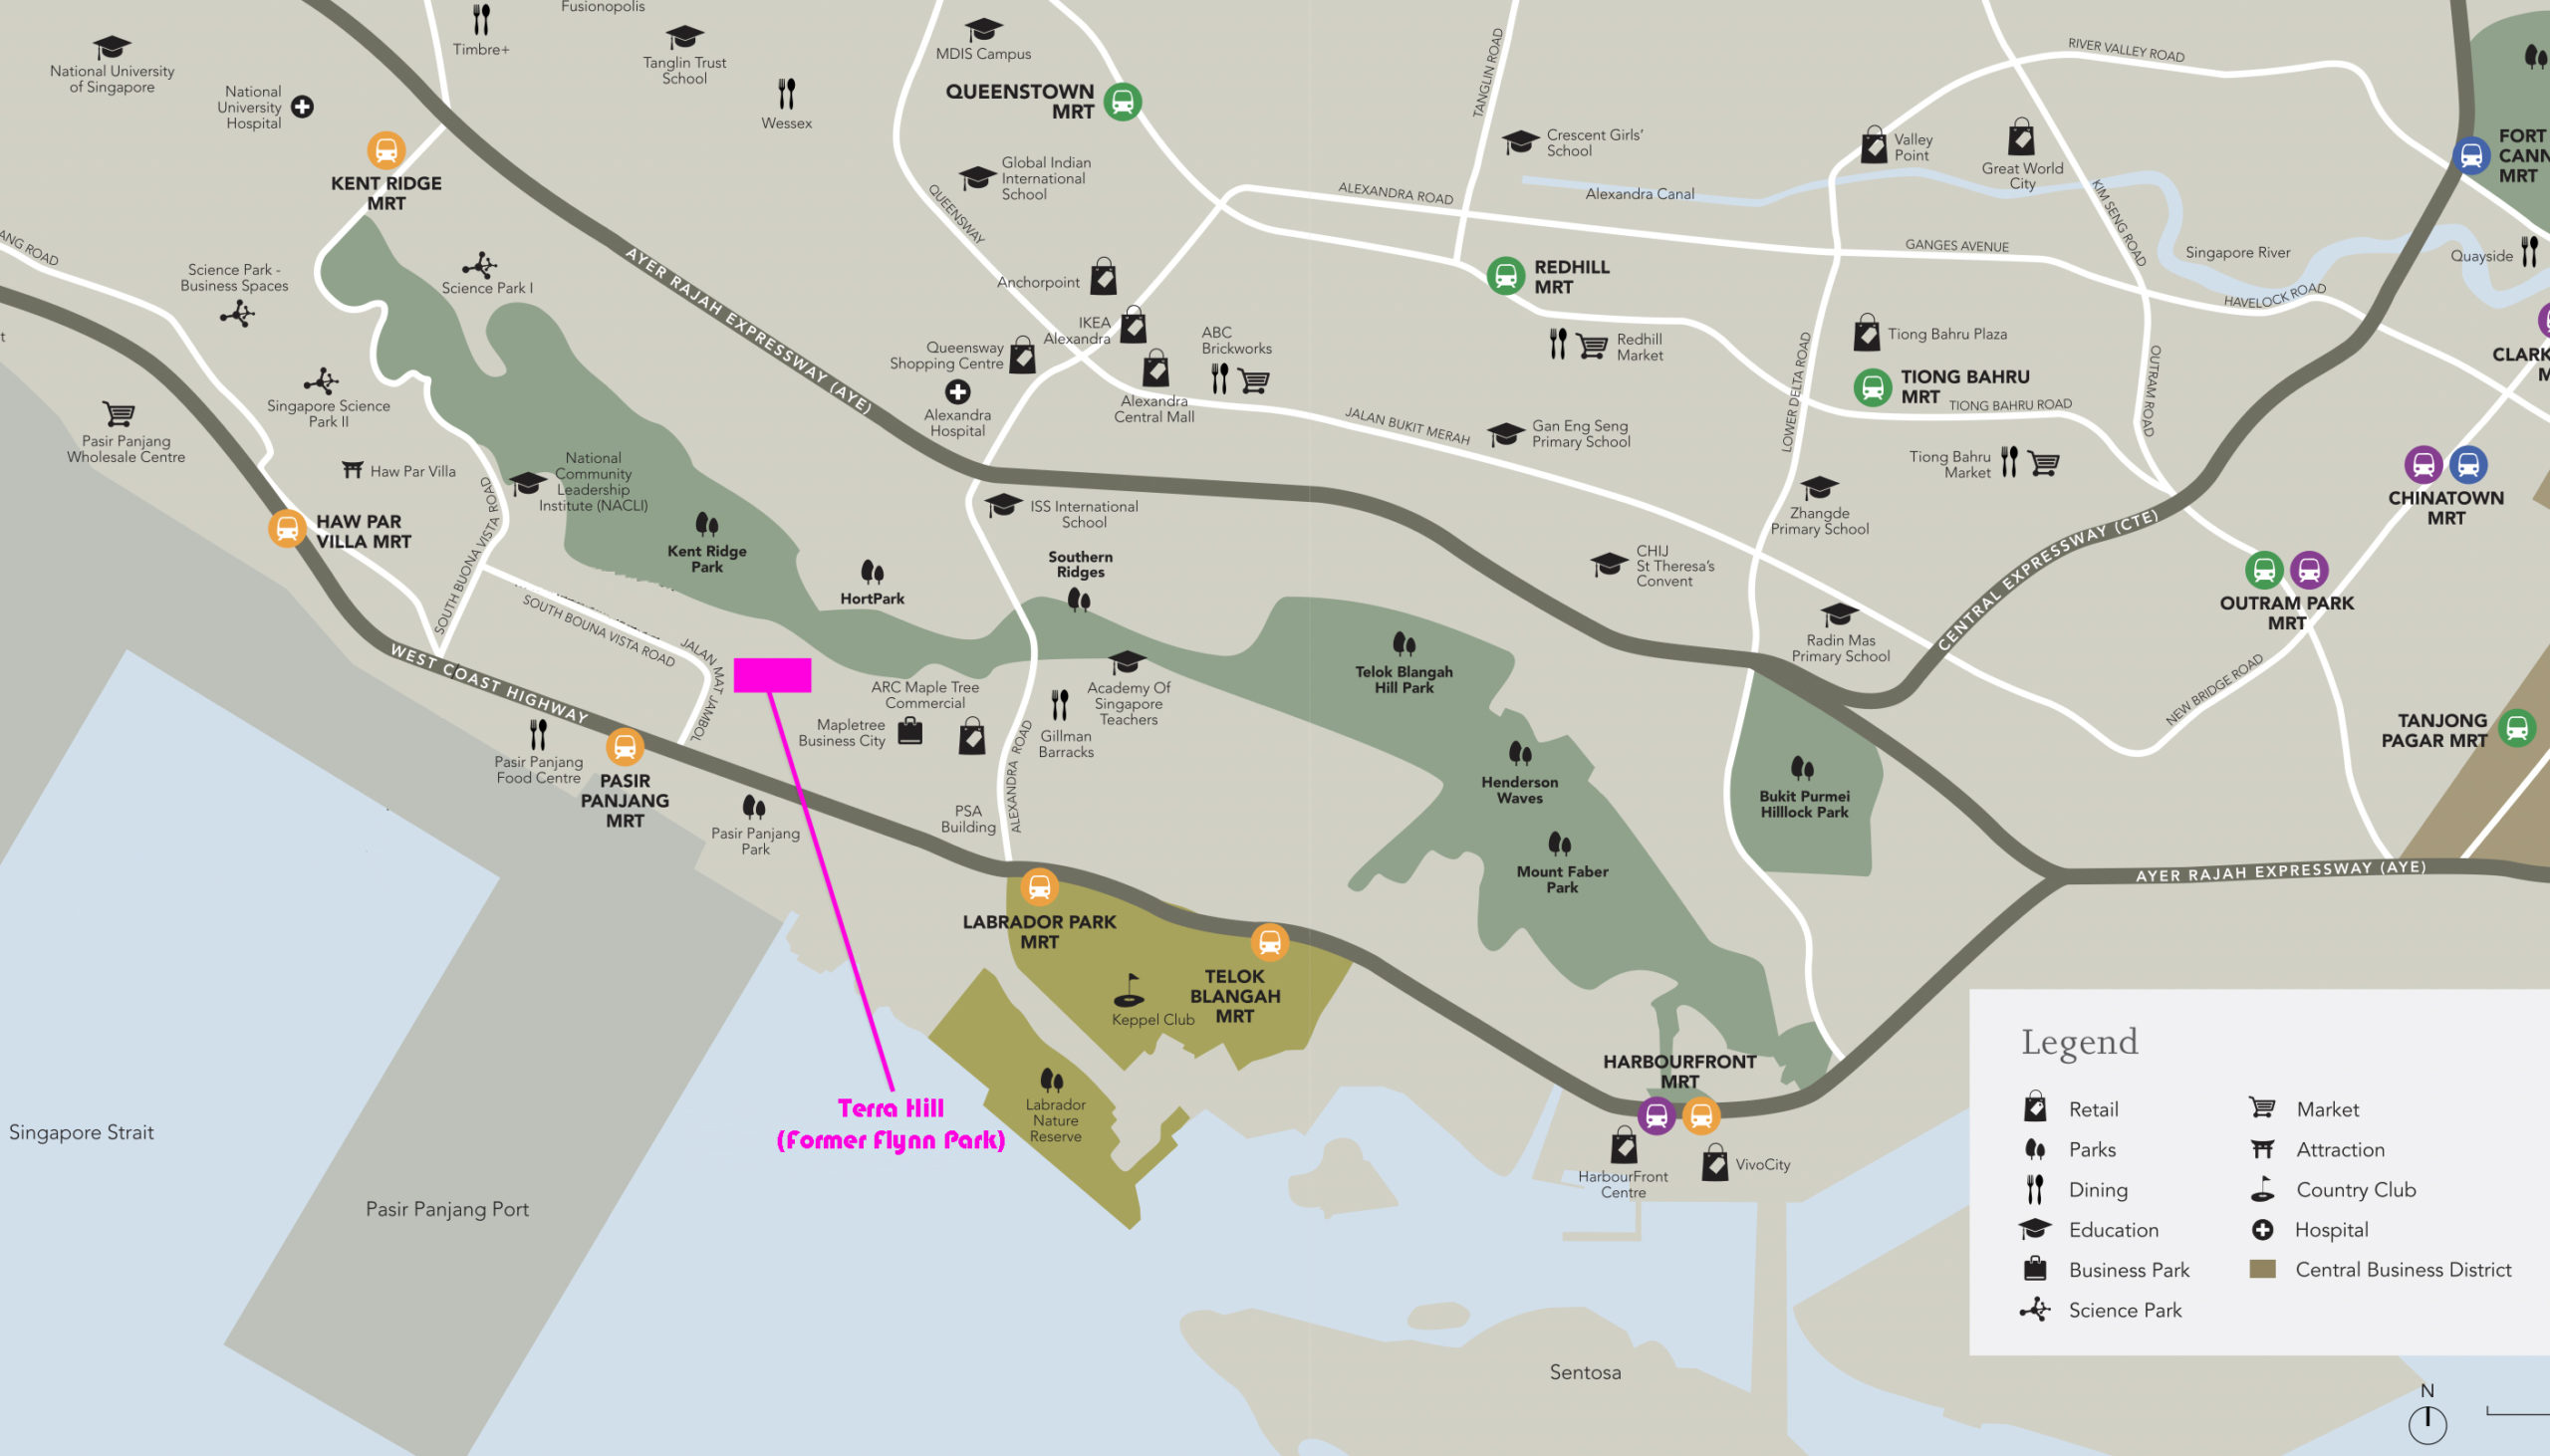 Terra Hill Location Map (Former Flynn Park Condo) New Launch